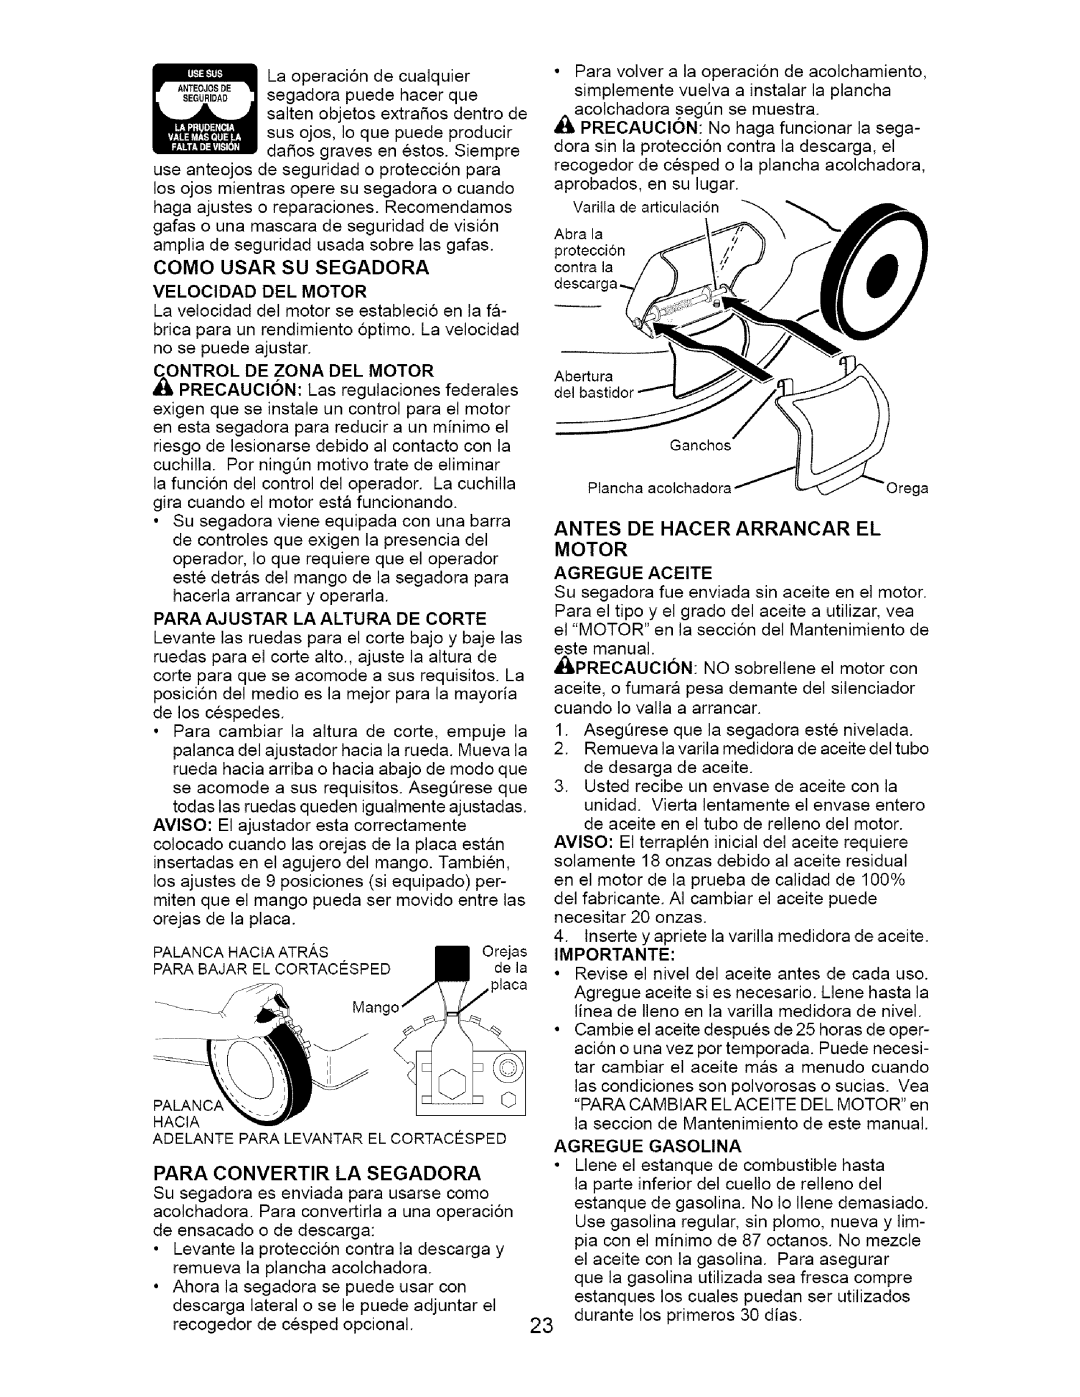 Craftsman 917.385124 owner manual Como Usar Su Segadora Velocidad Del Motor, Motor Agregue Aceite 